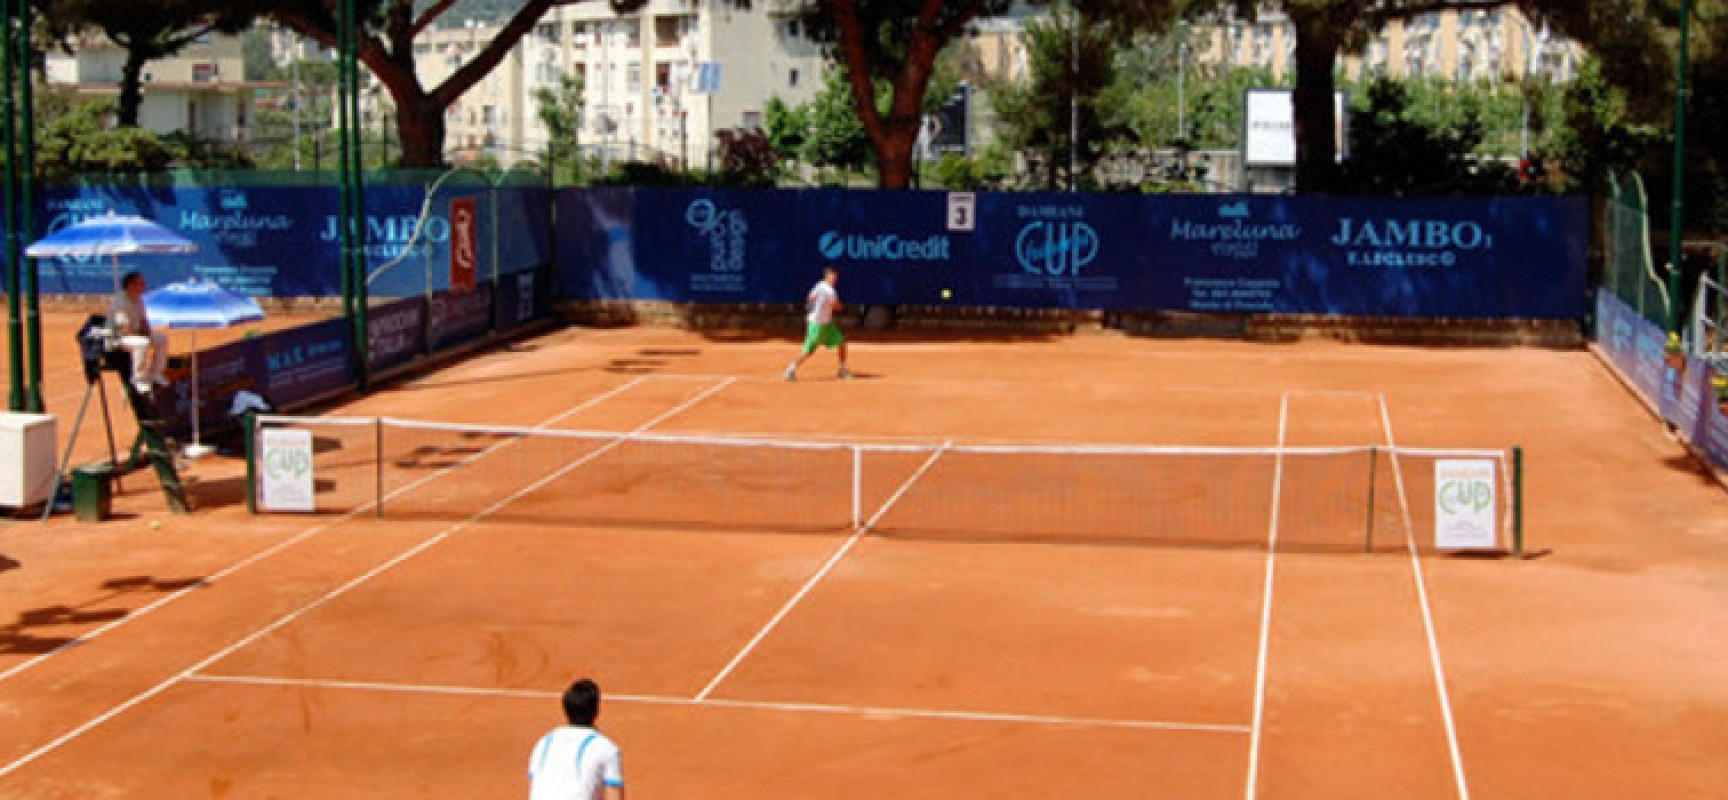 Tennis, oggi Pellegrino in campo al “Damiani’s Futures Cup 2014”